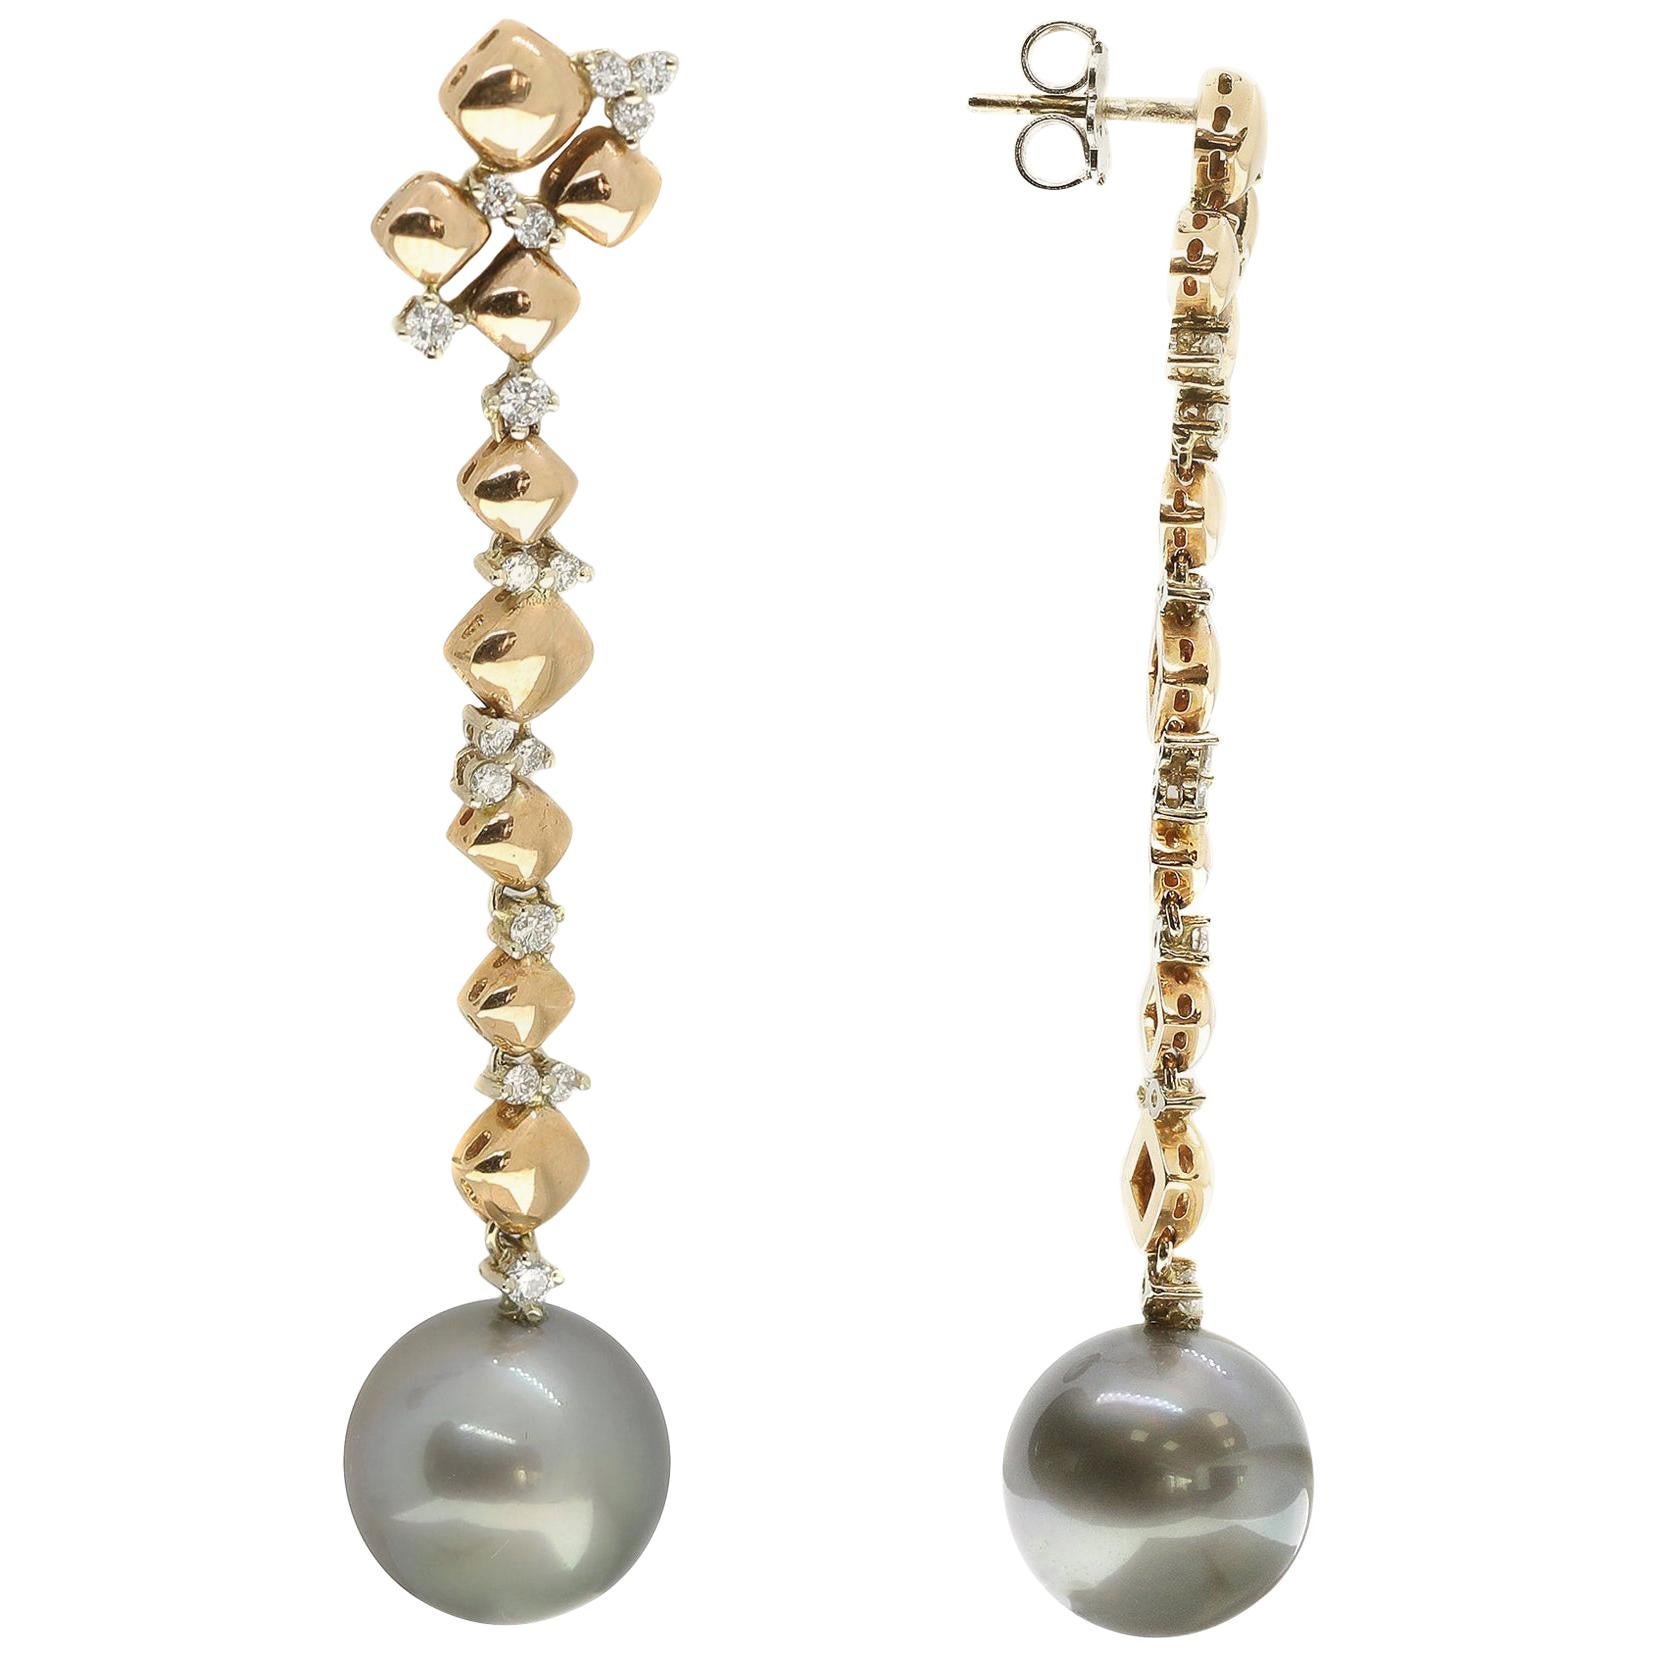 Diese eleganten Ohrringe mit Tahiti-Perlen und weißen Diamanten wurden meisterhaft von Hand aus 18 Karat Weiß- und Roségold gefertigt. 

Diese 6,5 cm langen Postback-Ohrringe sind sowohl ein Kunstobjekt als auch ein kostbares Schmuckstück,